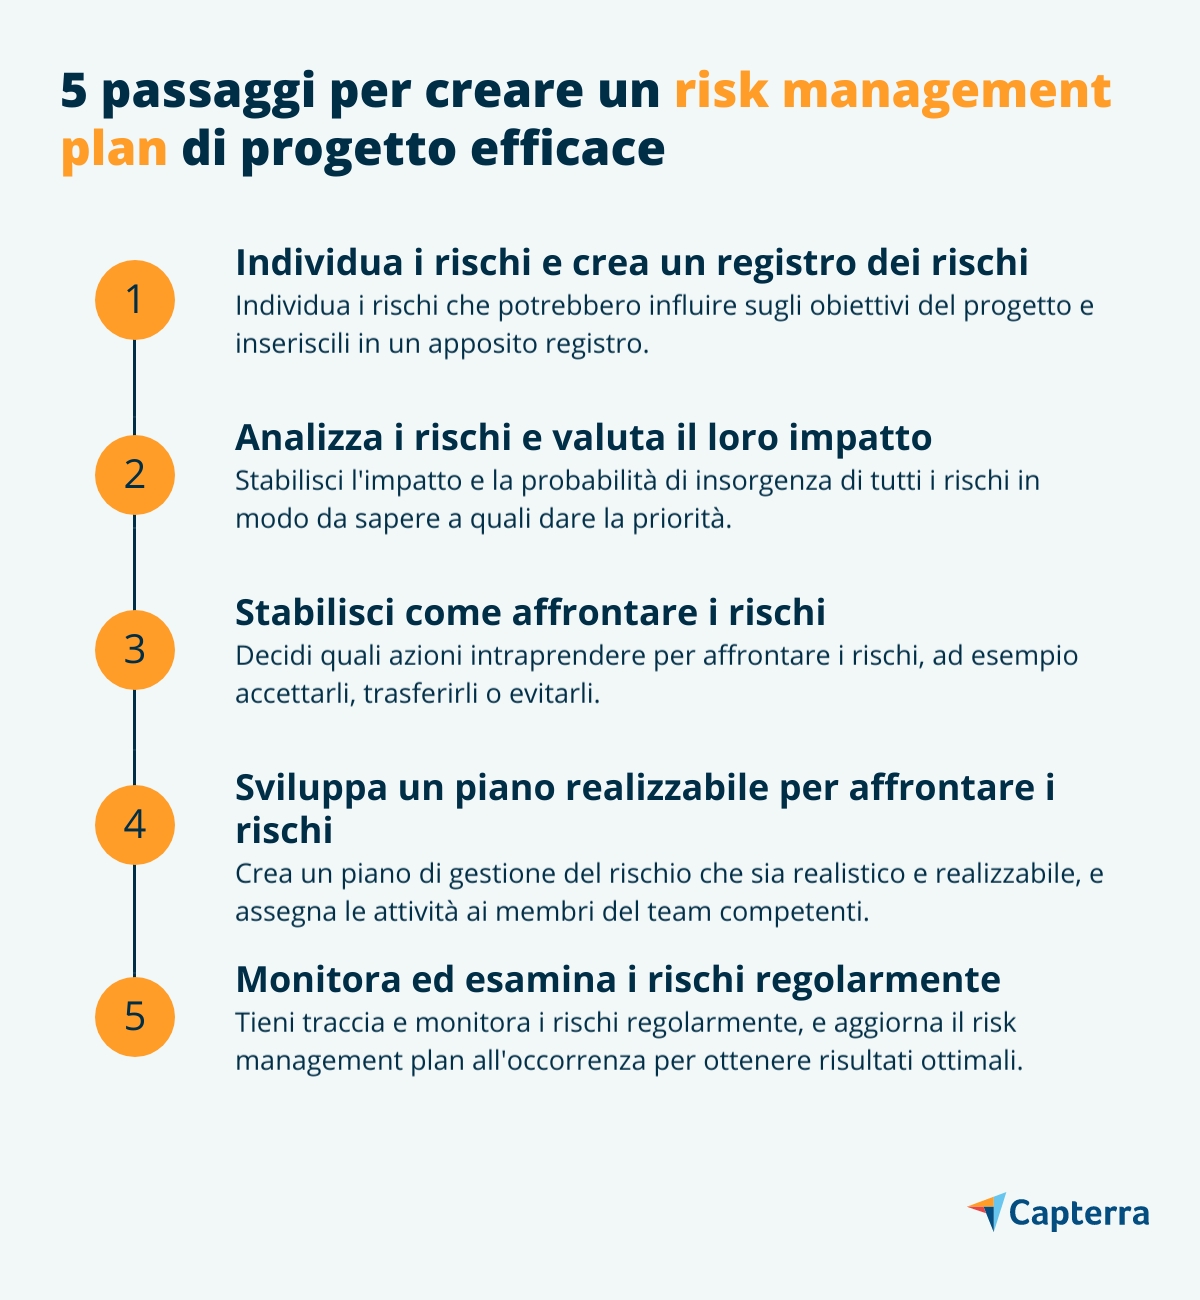 5 step per create un risk management plan